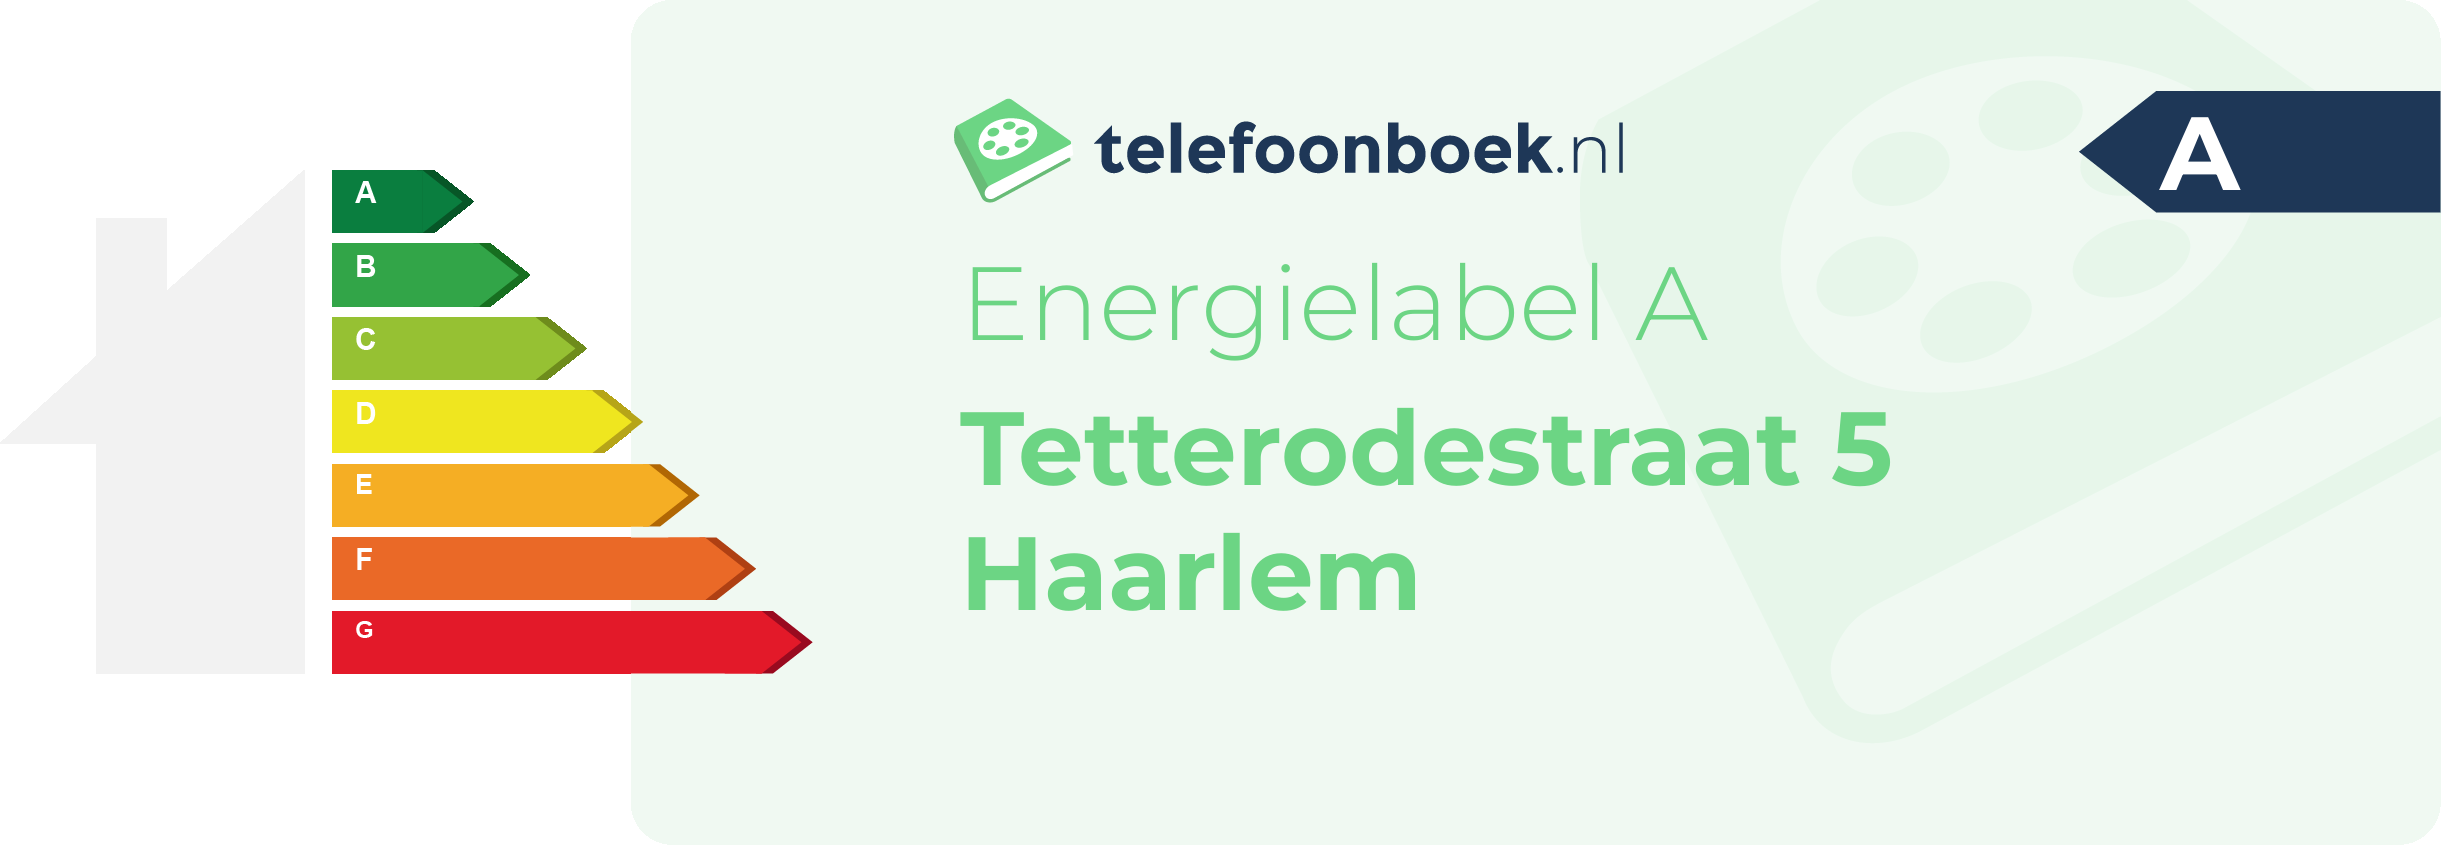 Energielabel Tetterodestraat 5 Haarlem